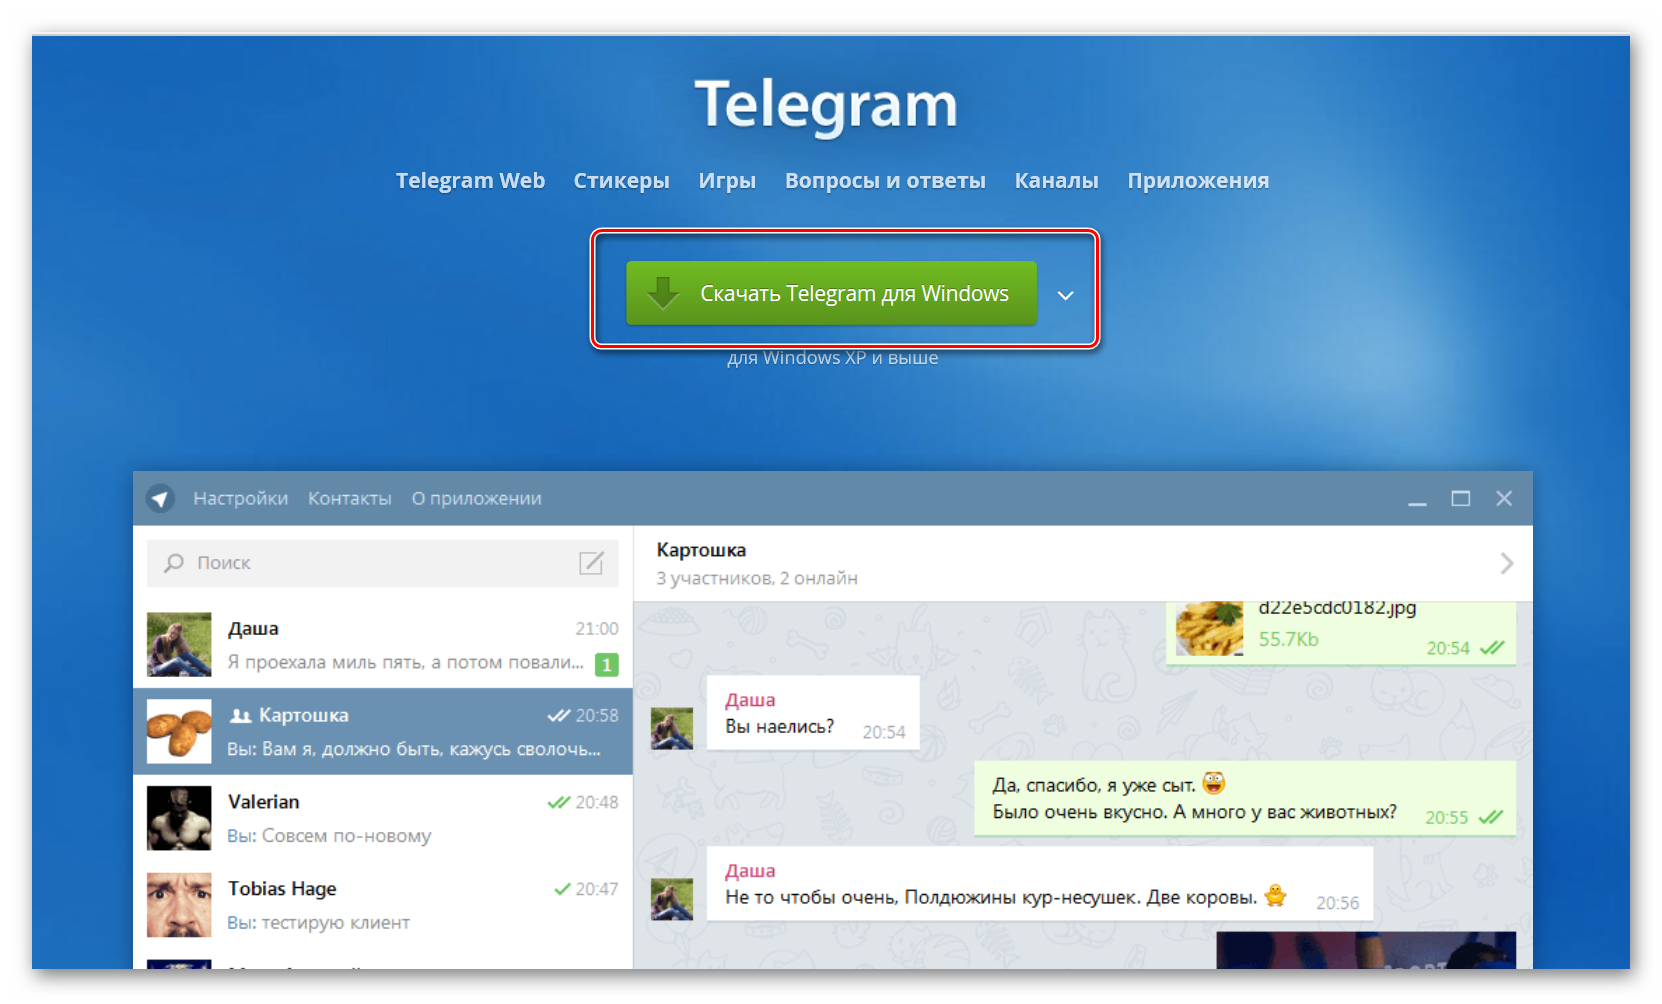 Telegram profil. Профиль в телеграмме. Телеграмм web. Веб приложение в телеграм. Https telegram login